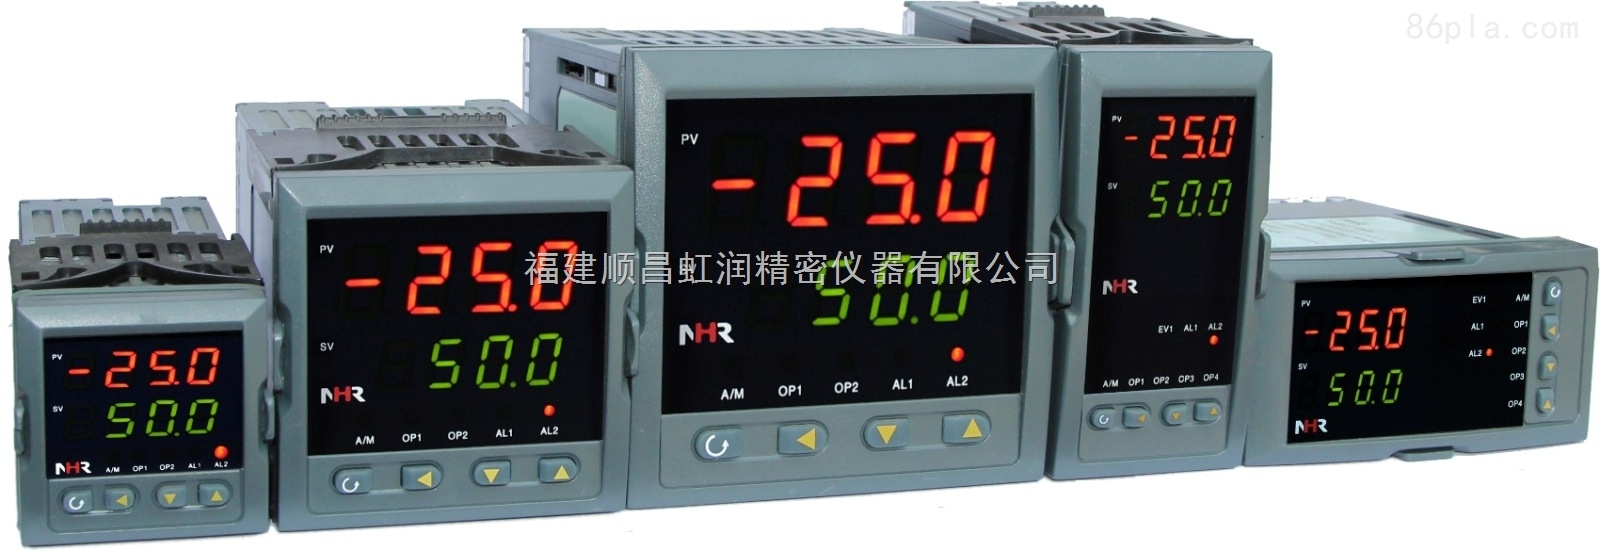 虹潤推出NHR5500系列手動操作器